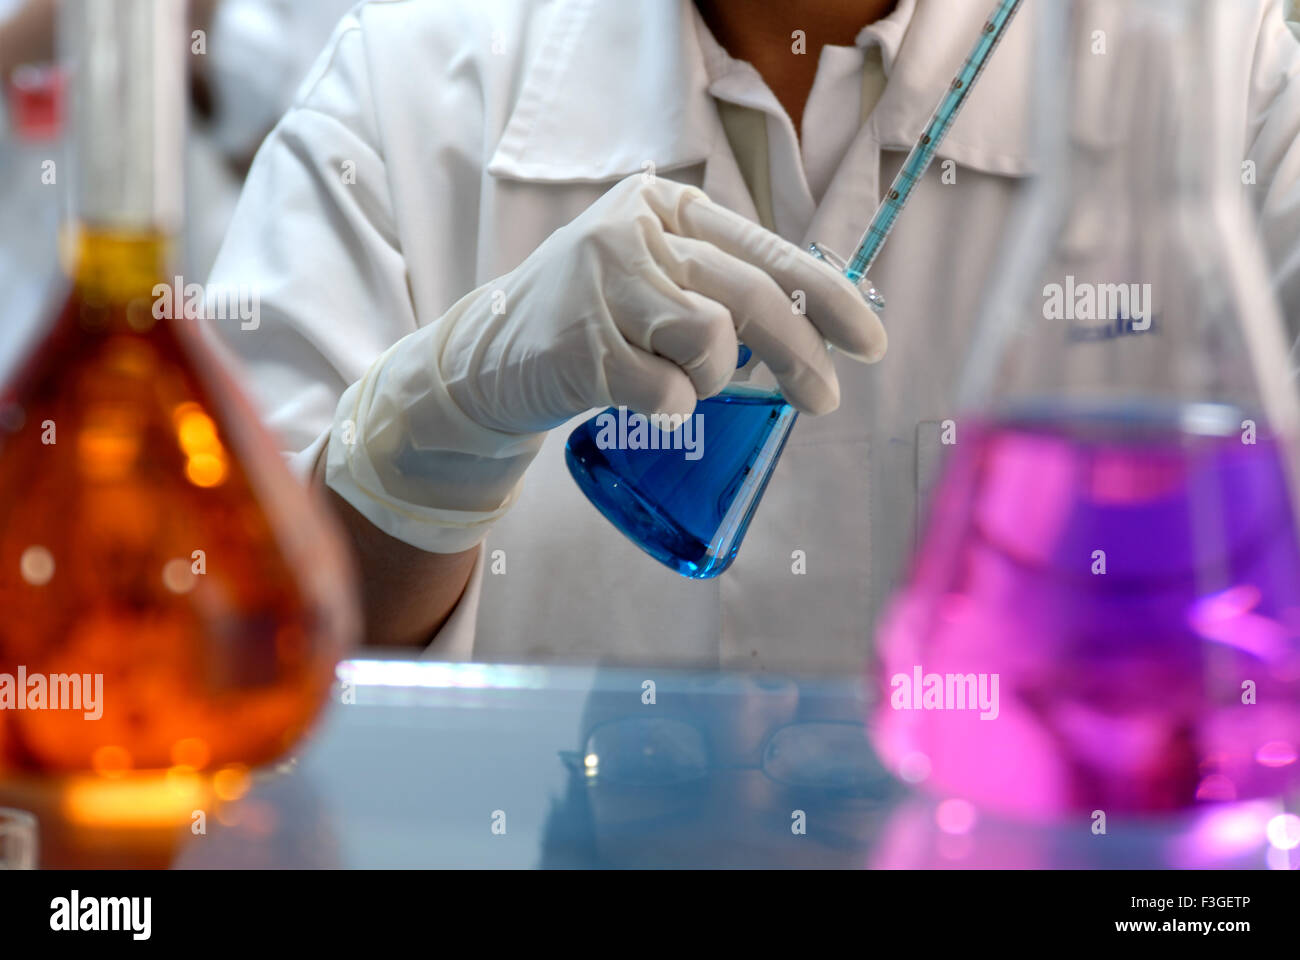 Die pharmazeutische Forschung Laboratry lab chemischen flüssigen Farben Kolben und Reagenzgläser lady hand Forschungsprojekt - Rmm 123399 Stockfoto